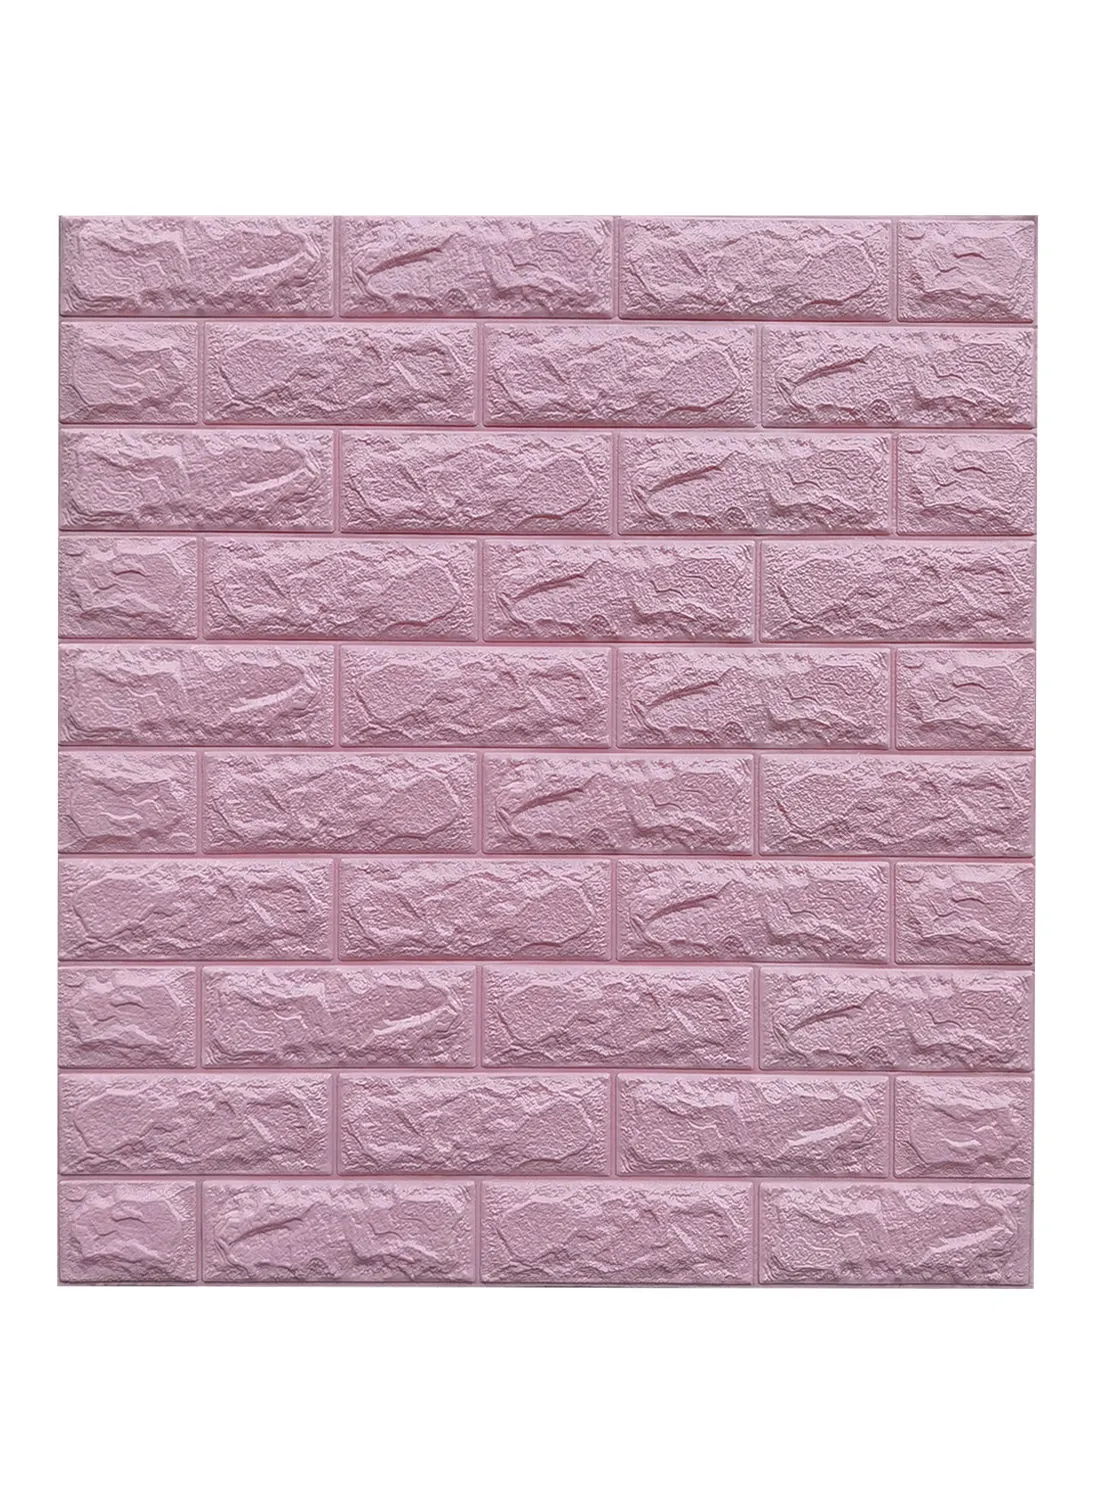 مجموعة فوم ثلاثية الأبعاد ذاتية اللصق من سويتش مكونة من 10 ورق جدران بجودة ممتازة للمنازل والمكاتب والمطعم والتثبيت الذاتي باللون الوردي